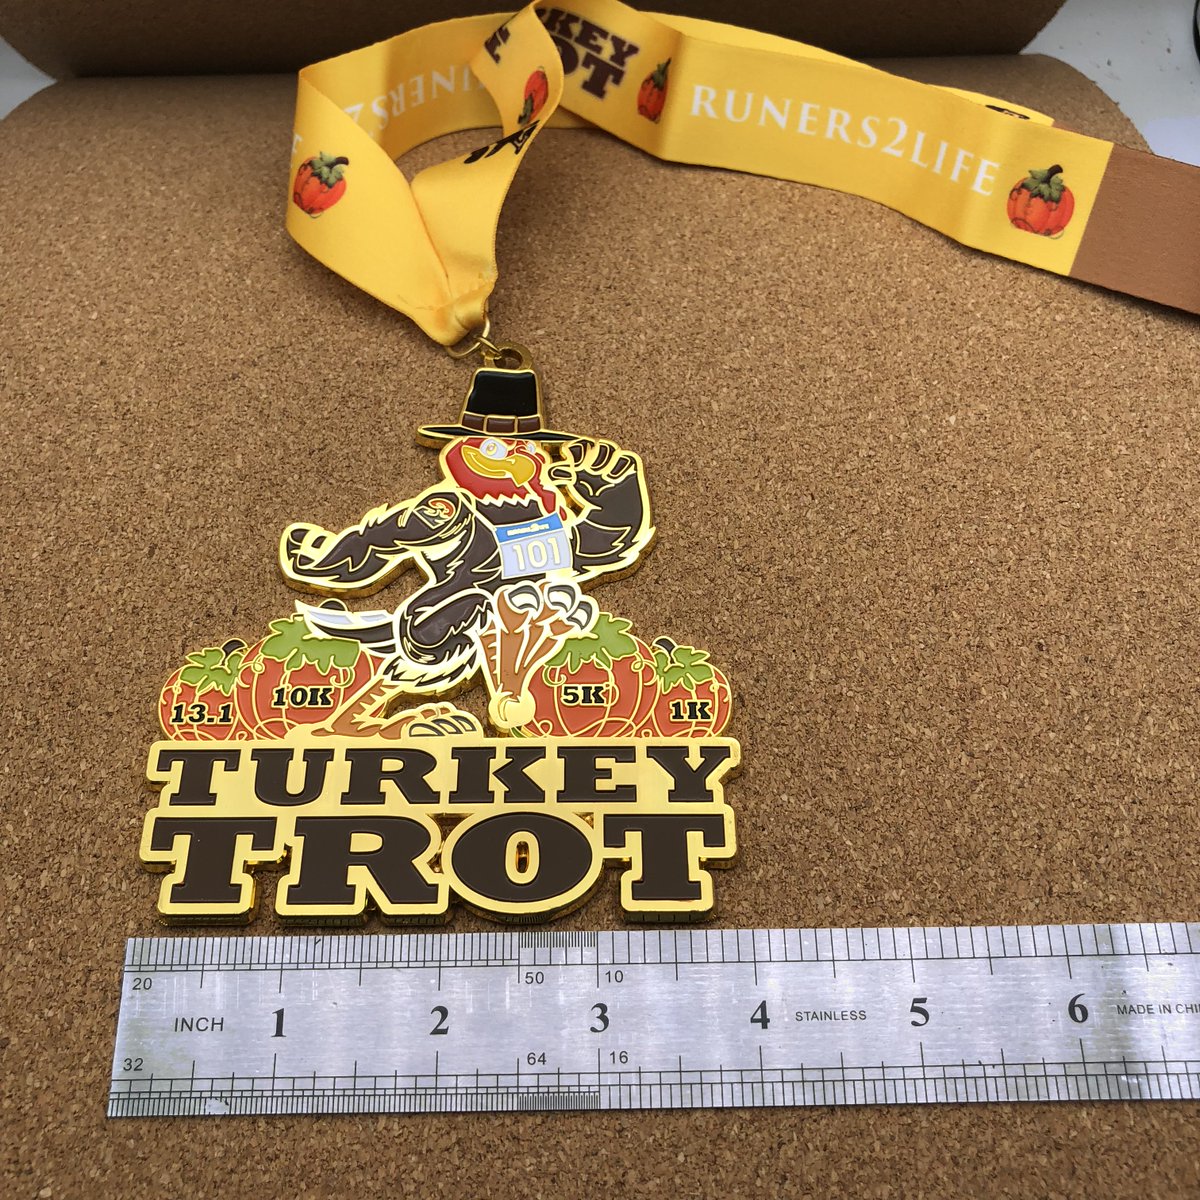 [custom made big size medal] Turkey trot
#medal
#marathon
#running
#triathlon
#raceevent
#funrun
#championmedal
#runner
#trailrunning
#awards
#companyrun
#runningmotivation